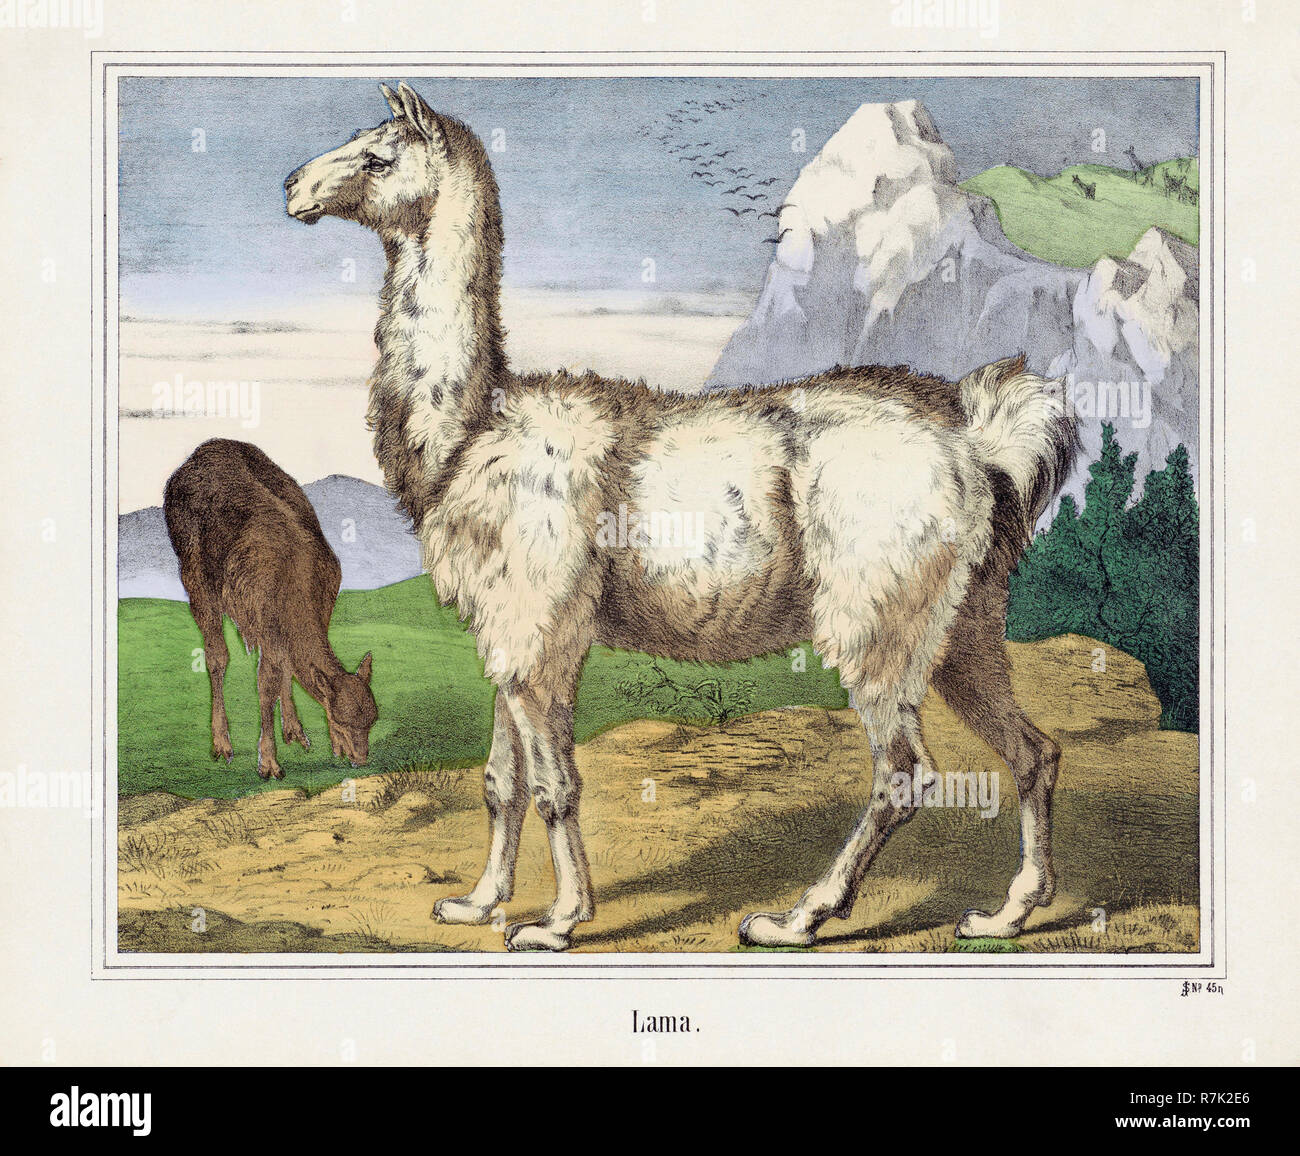 Ein Lama oder Lama. Nach einem 19. Jahrhundert drucken. Stockfoto